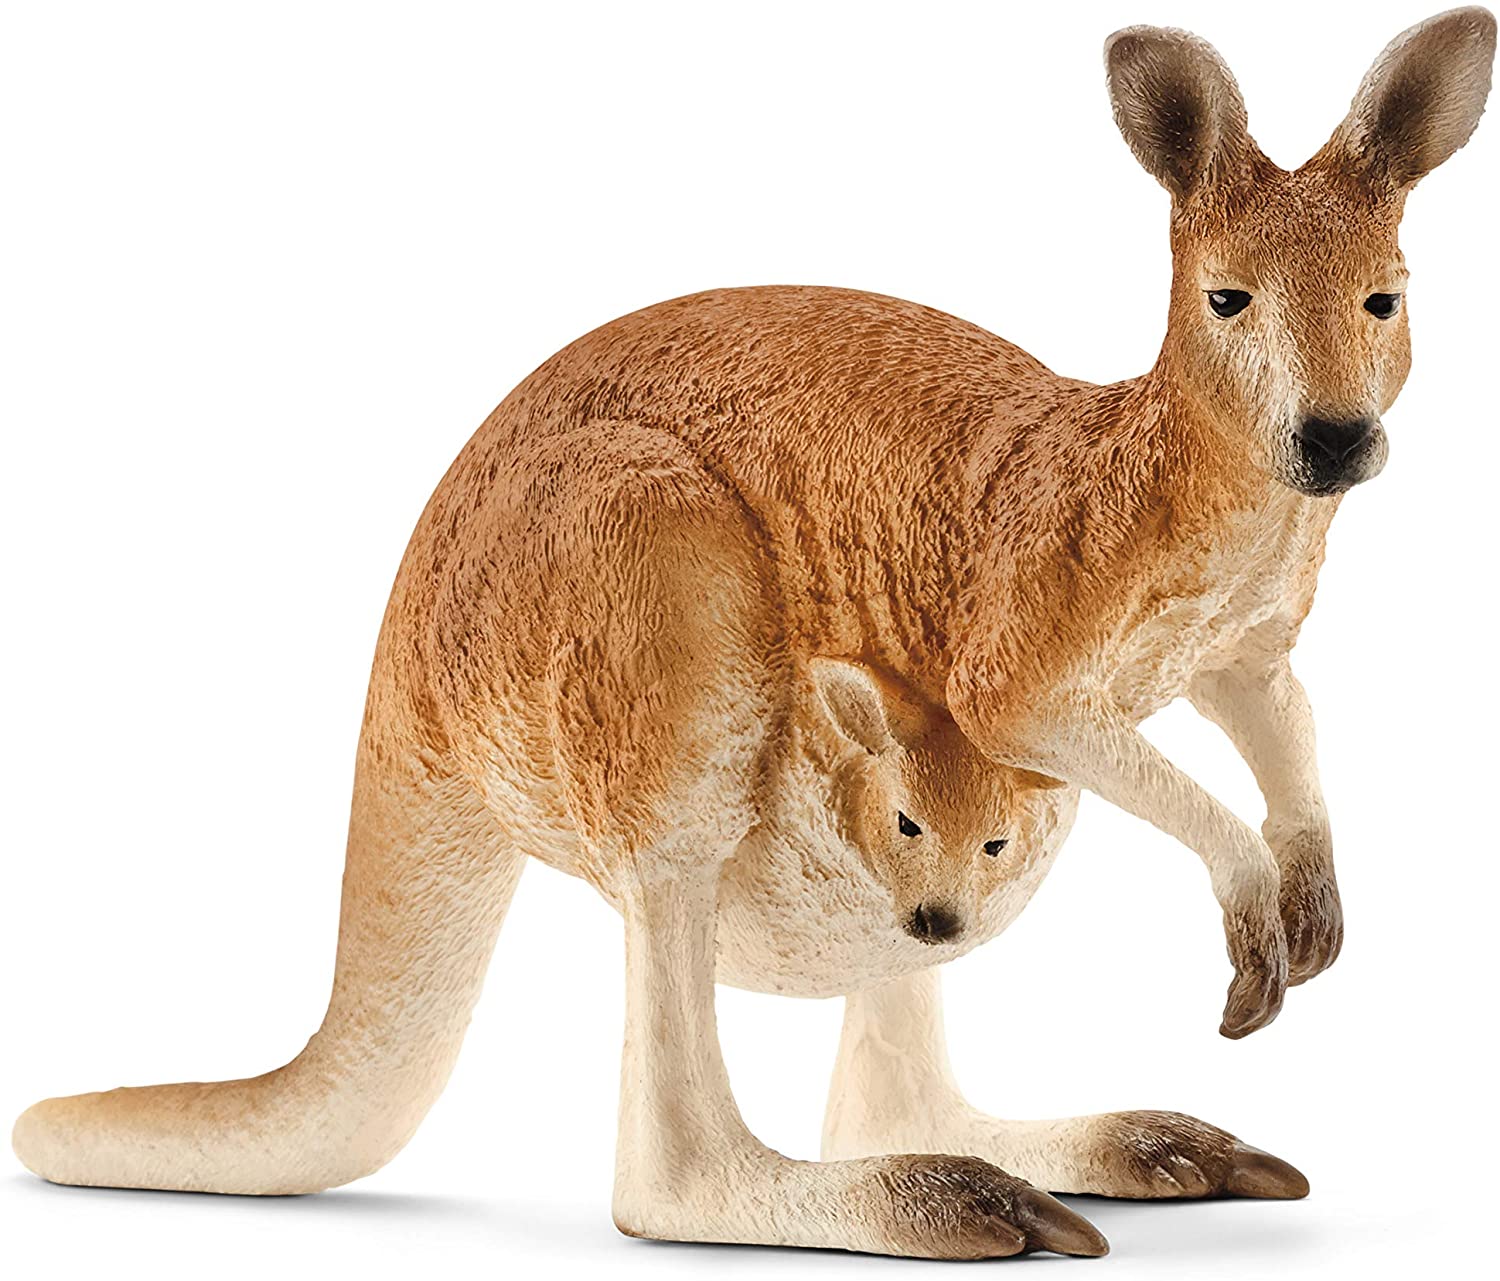 Kangaroo - Ages 3+